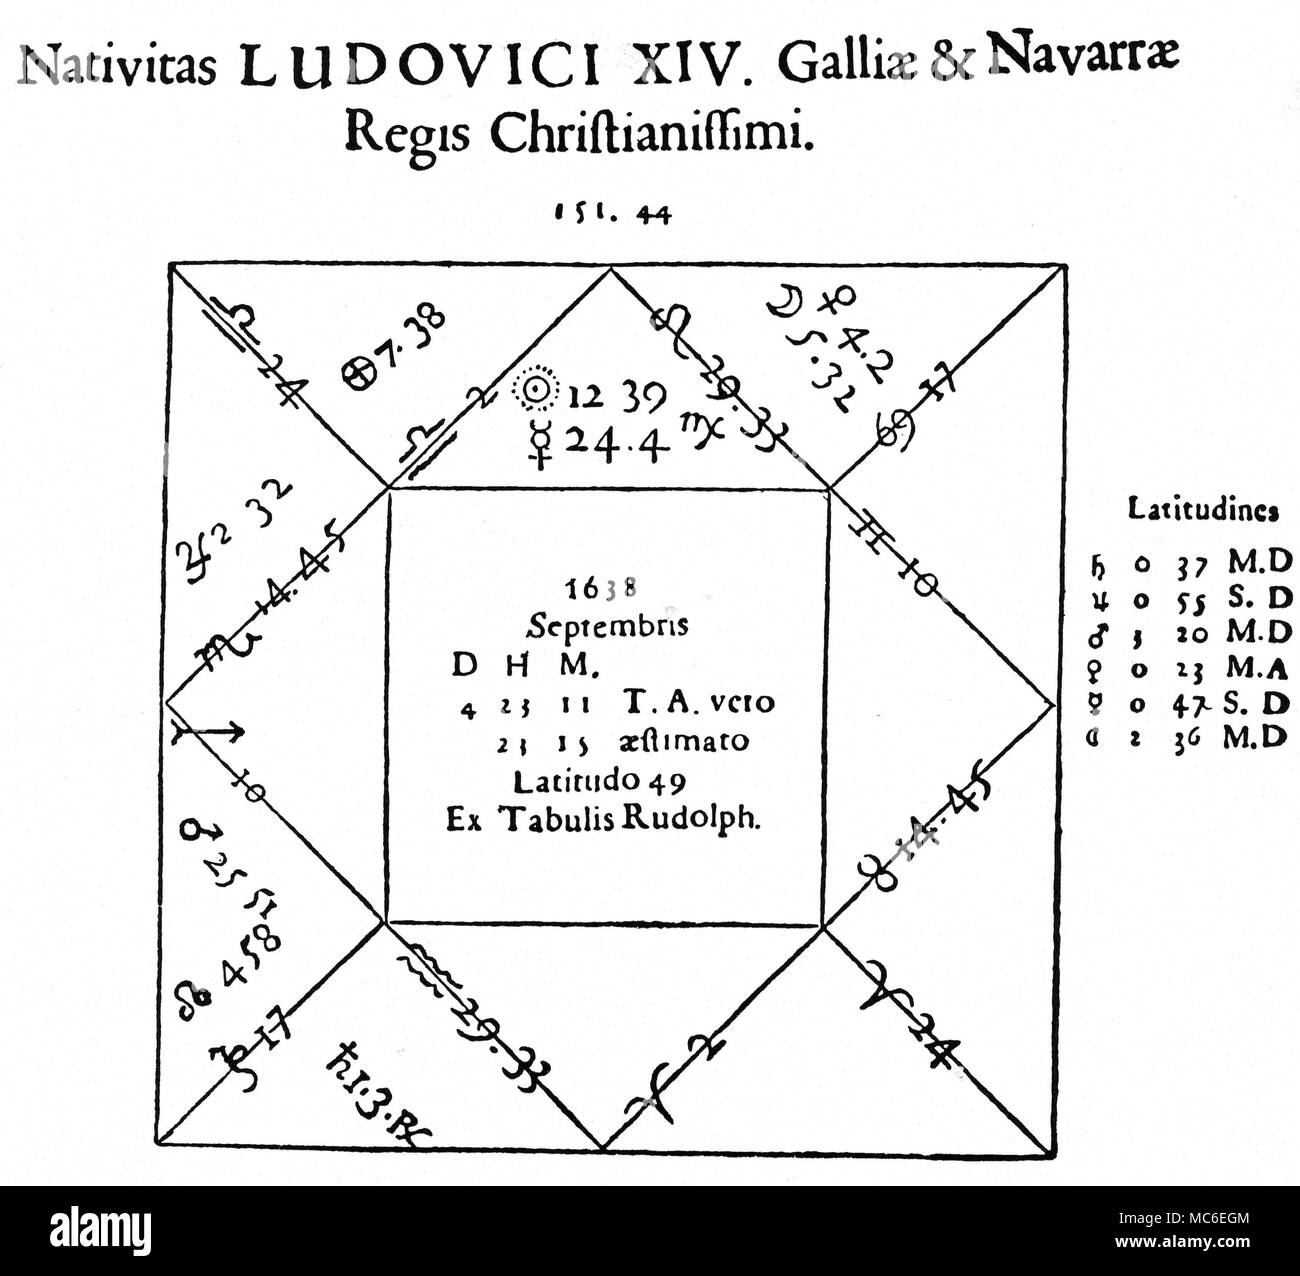 Horoskope - LOUIS XIV Horoskop von König Ludwig XIV. von Frankreich, das am 4. September 1638 geboren wurde. Von J. B. Morin de Villefranche, Astrolologia Gallica, 1661. Stockfoto